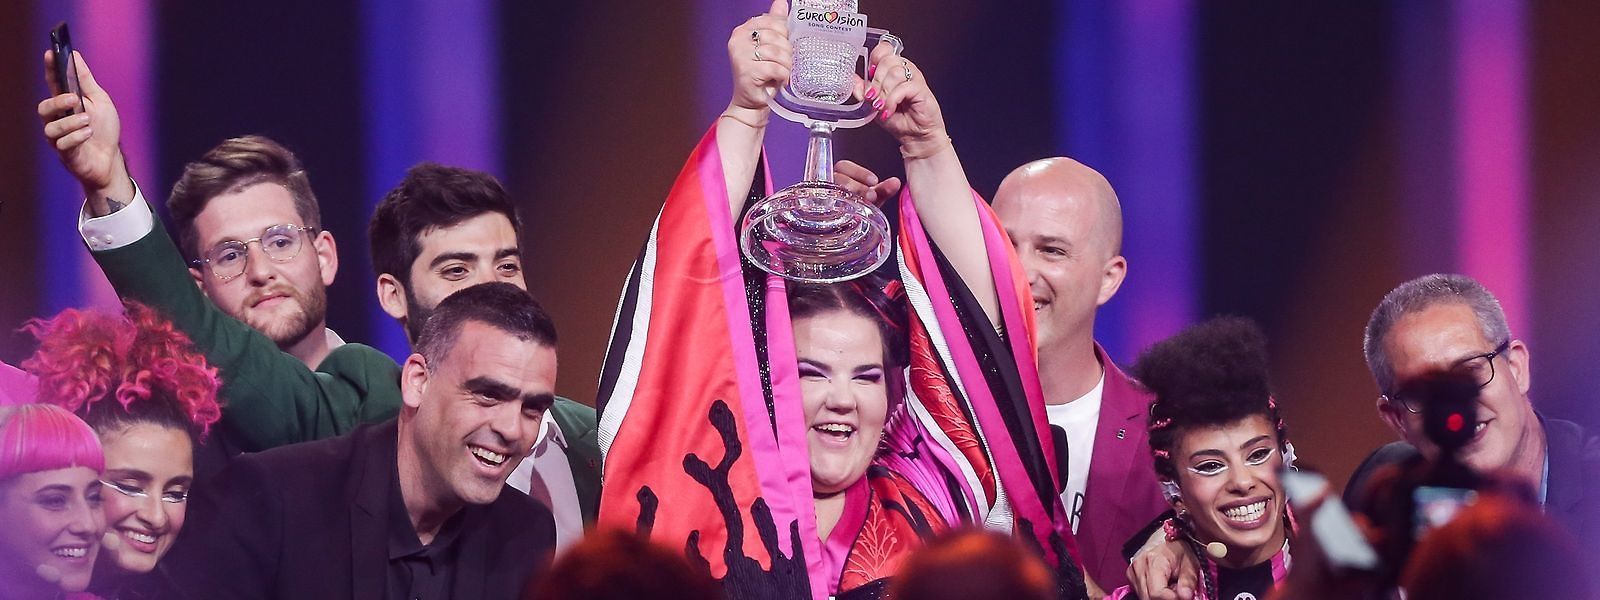 Die israelische Sängerin Netta gewann das Finale des 63. Eurovision Song Contests und bringt das Event somit in ihr Heimatland Israel.